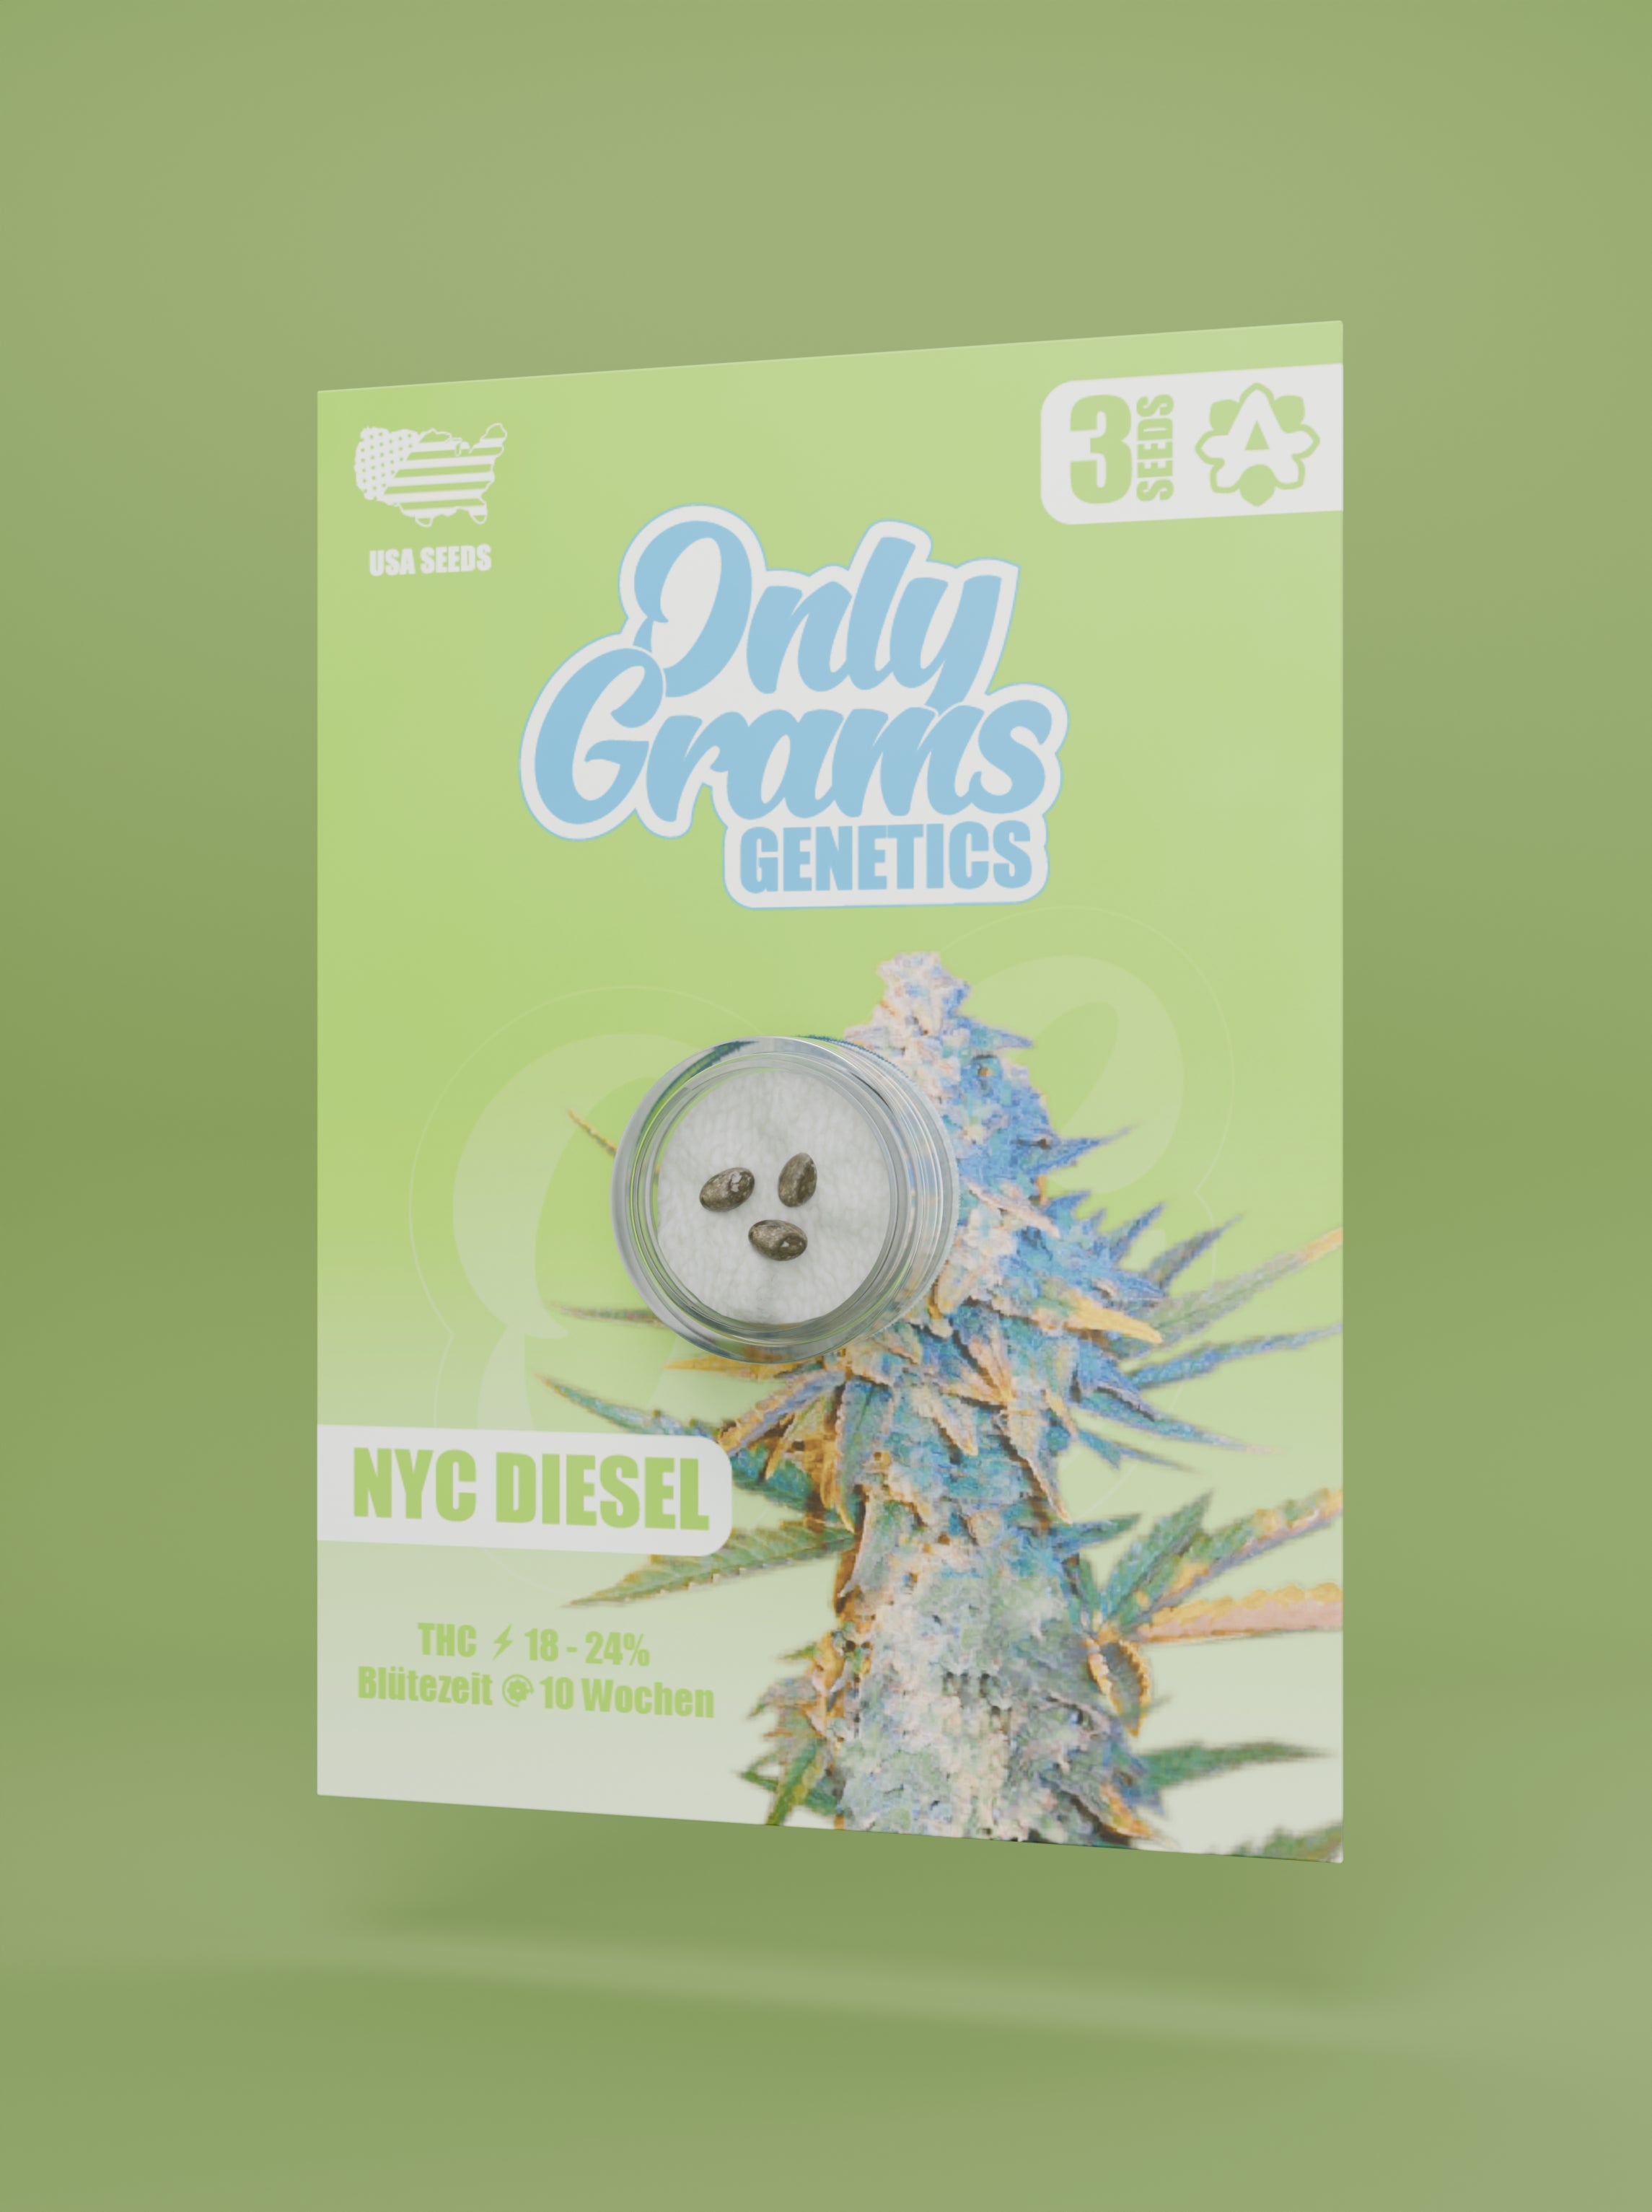 NYC Diesel THC Seeds